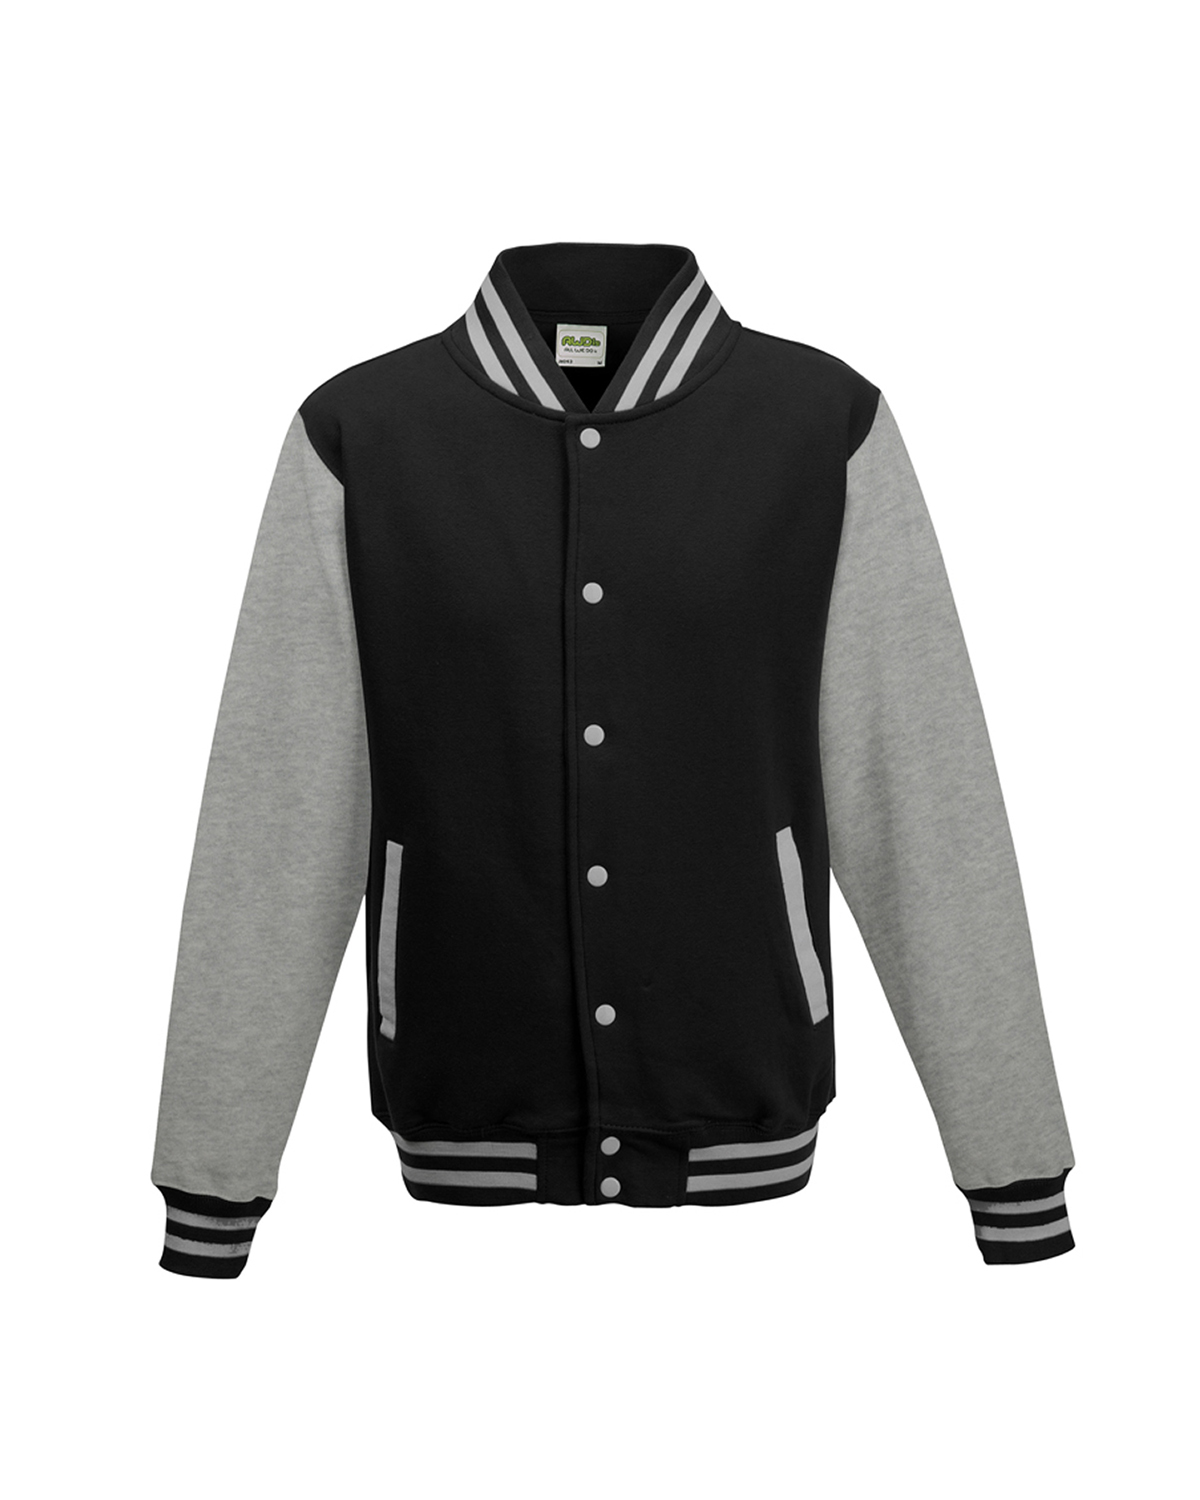 Louis Vuitton Sweatshirt Varsity Jacket Siyah %55 İNDİRİM!, Maslak Outlet